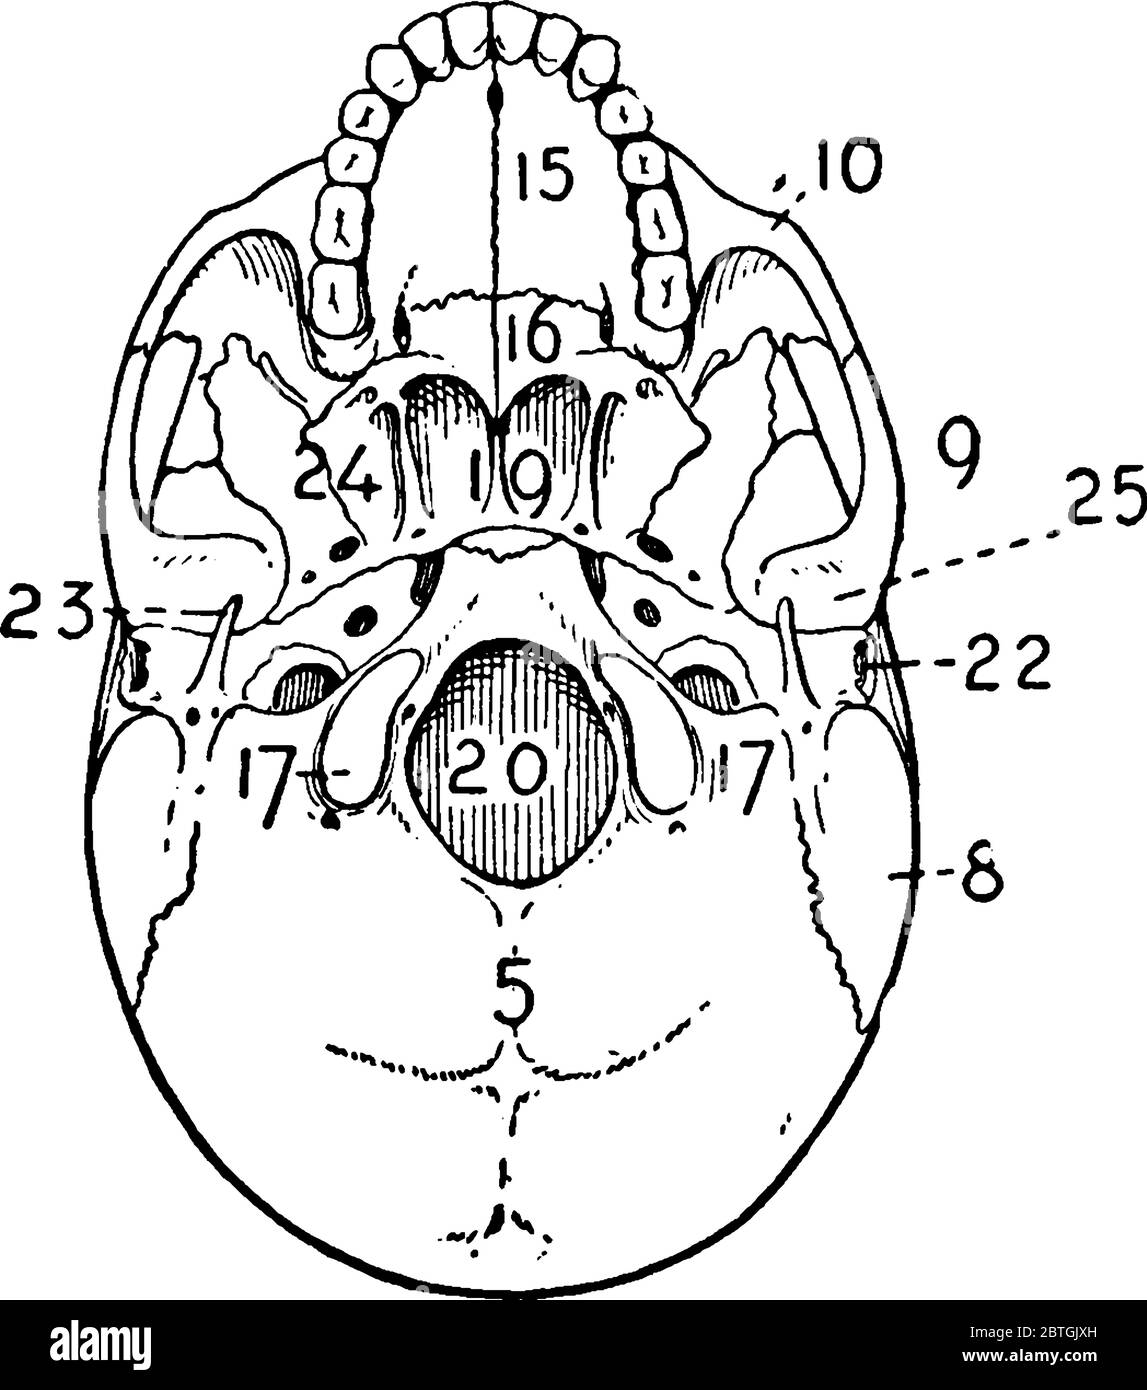 La vista dal basso di un cranio adulto, una struttura ossea che funge da cavità protettiva per il cervello, con le sue parti etichettate, disegno di linea vintage o. Illustrazione Vettoriale